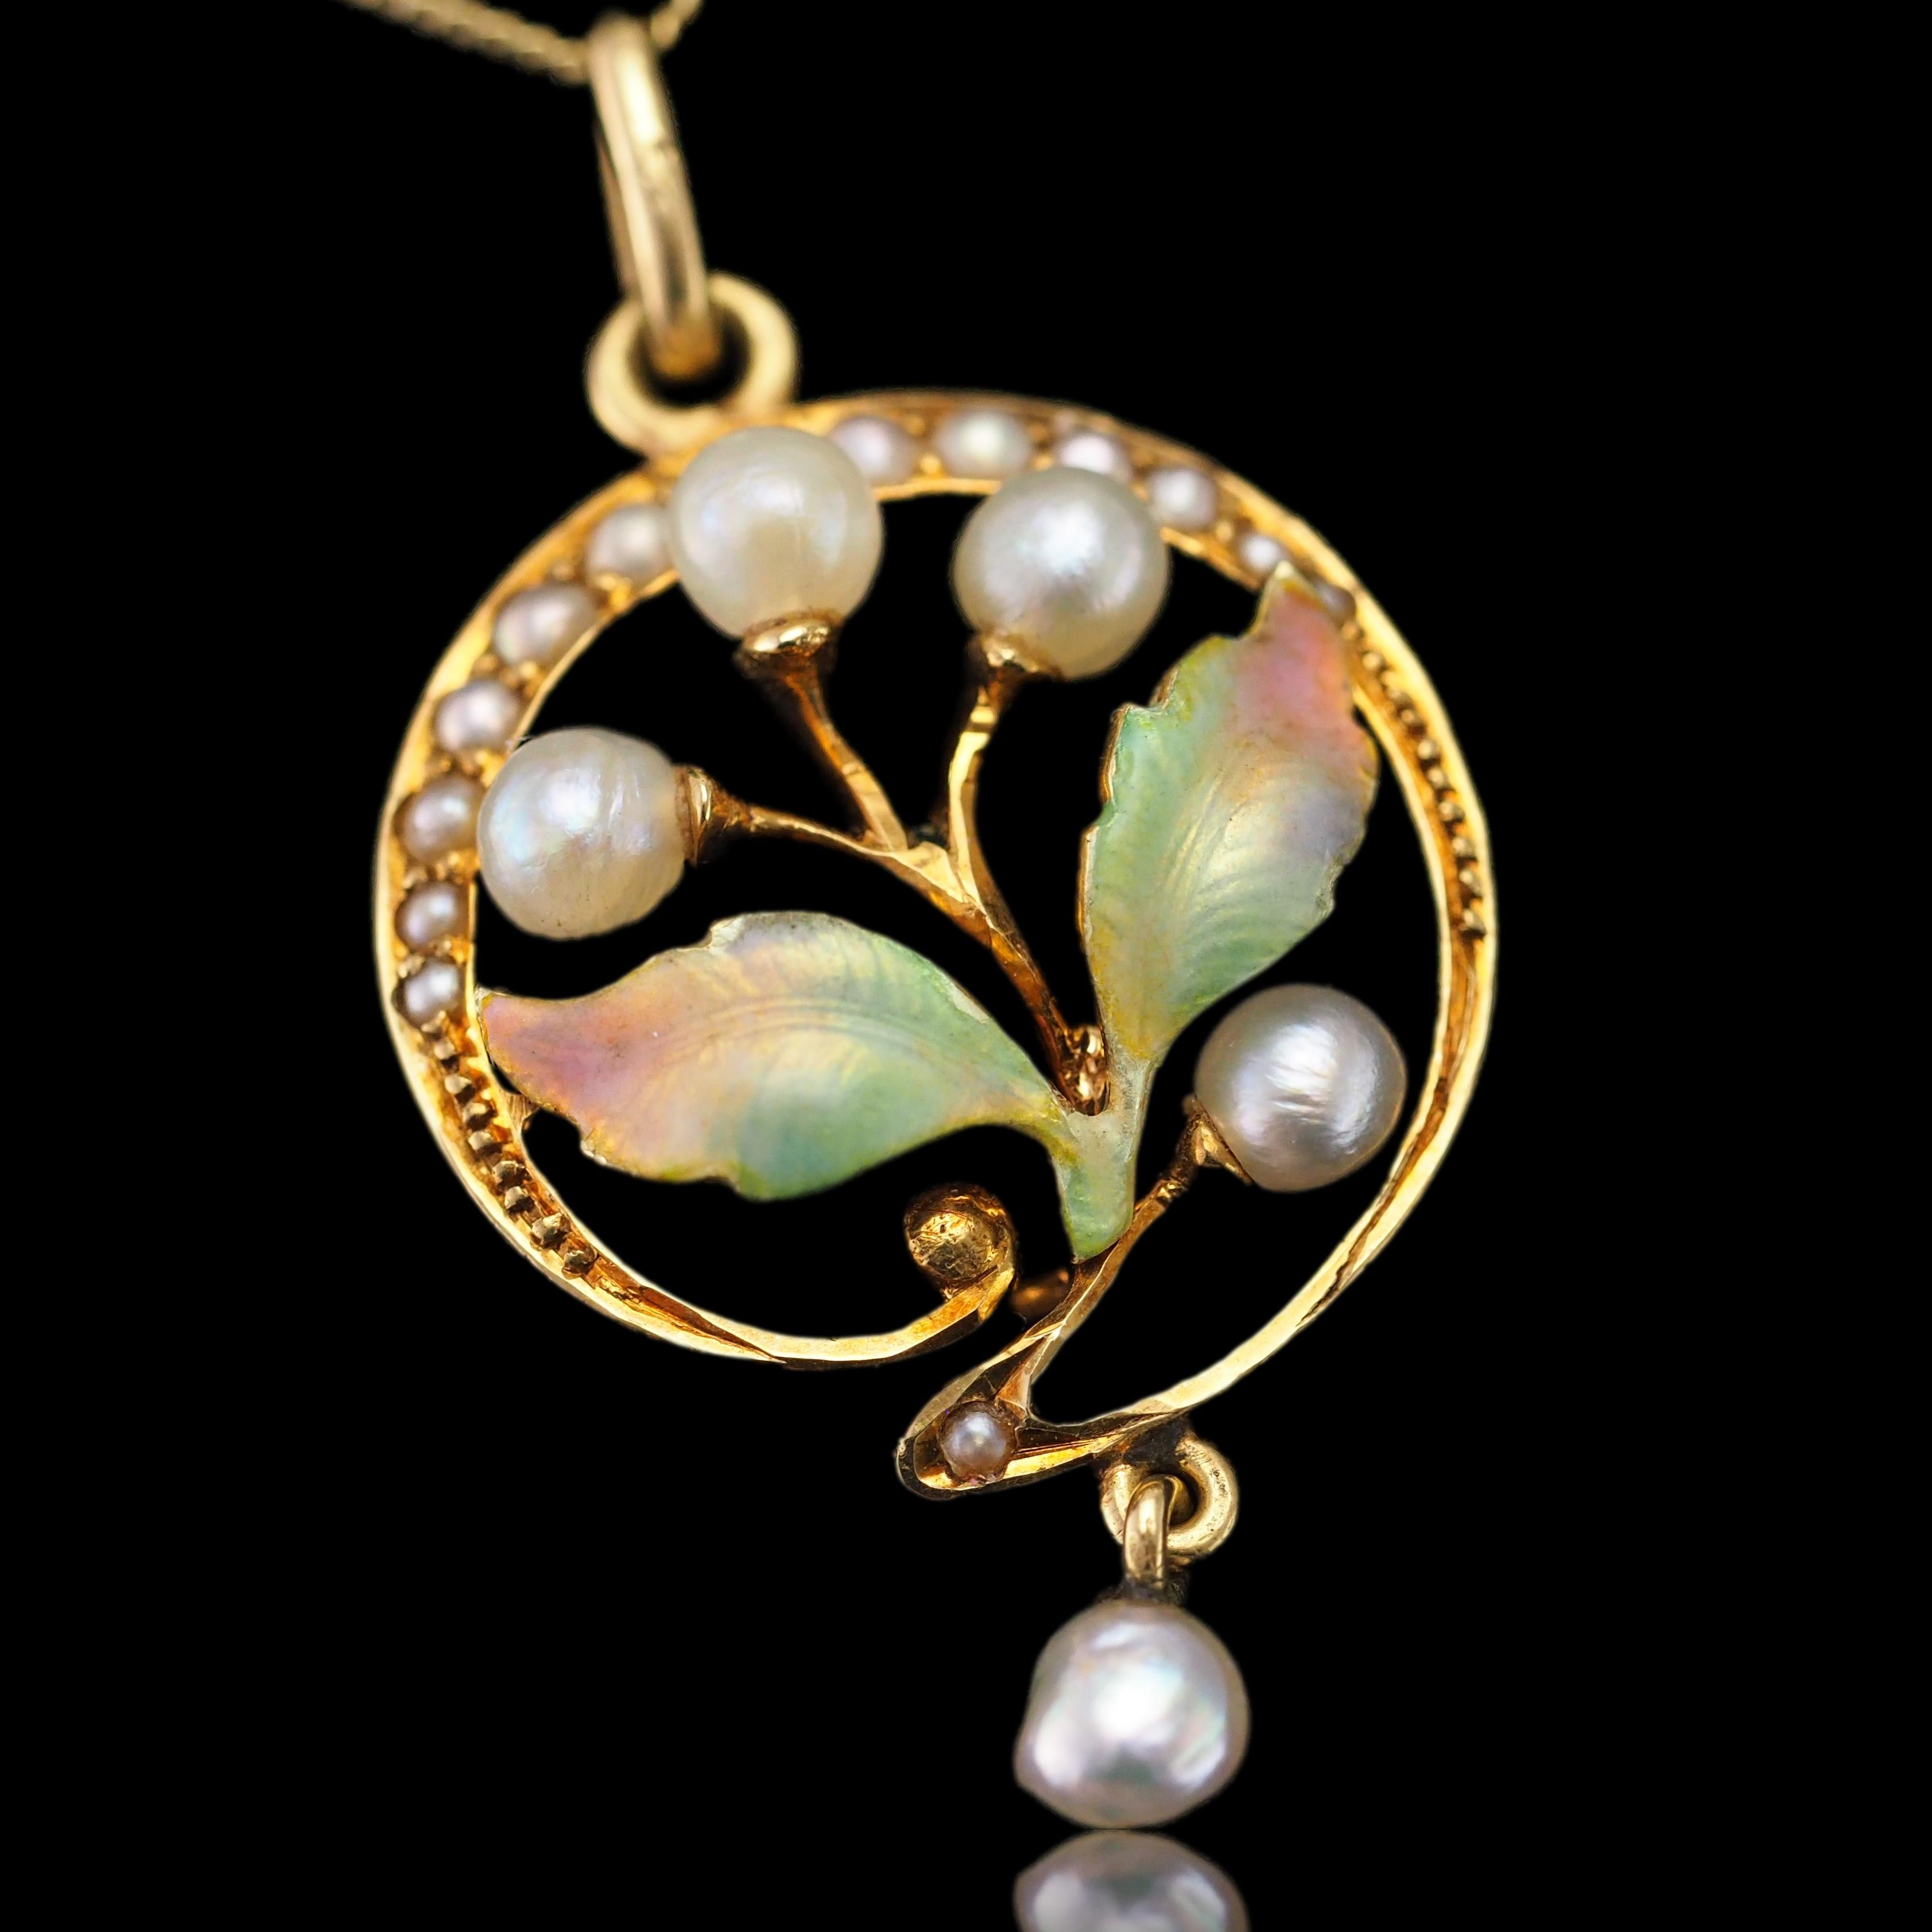 Antique Edwardian Pearl & Enamel Pendant Necklace 15K Gold Art Nouveau c.1910 For Sale 8